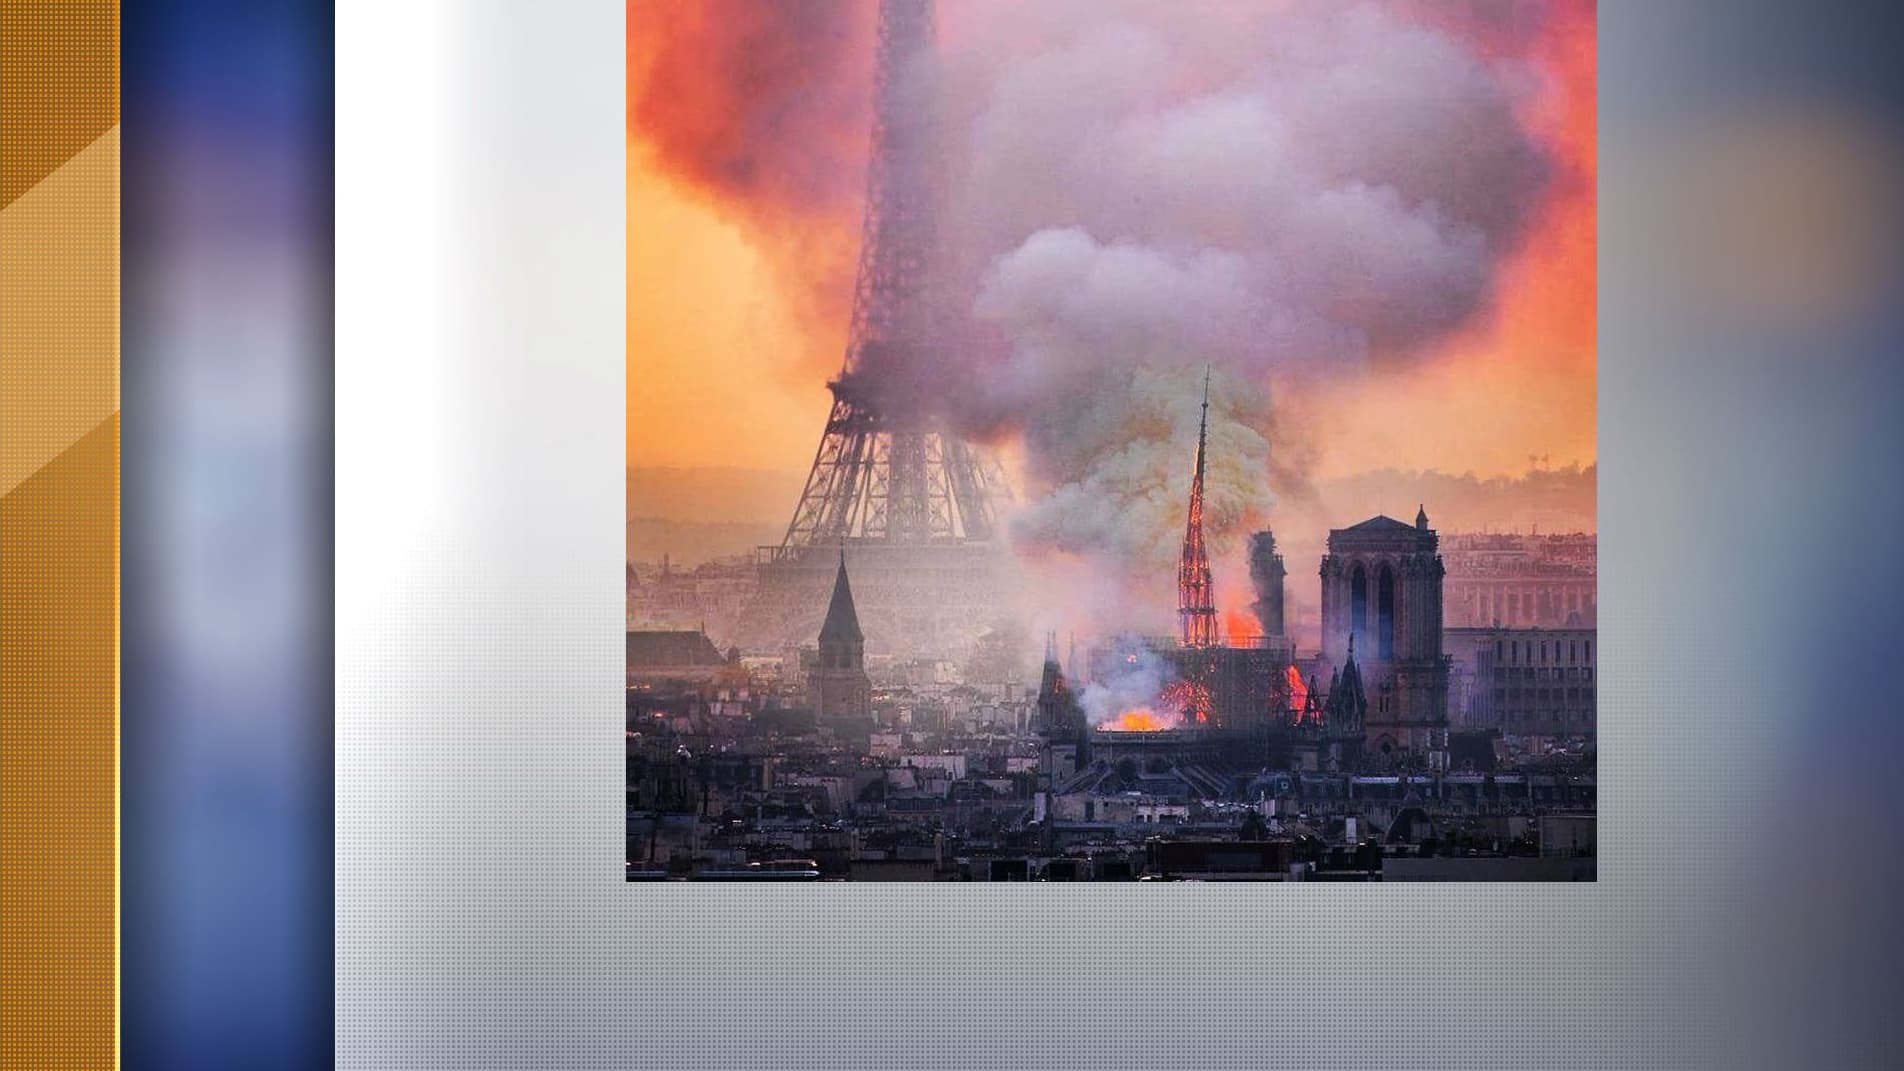 Incendie à Notre-Dame: la photo avec la Tour Eiffel est-elle un fake?